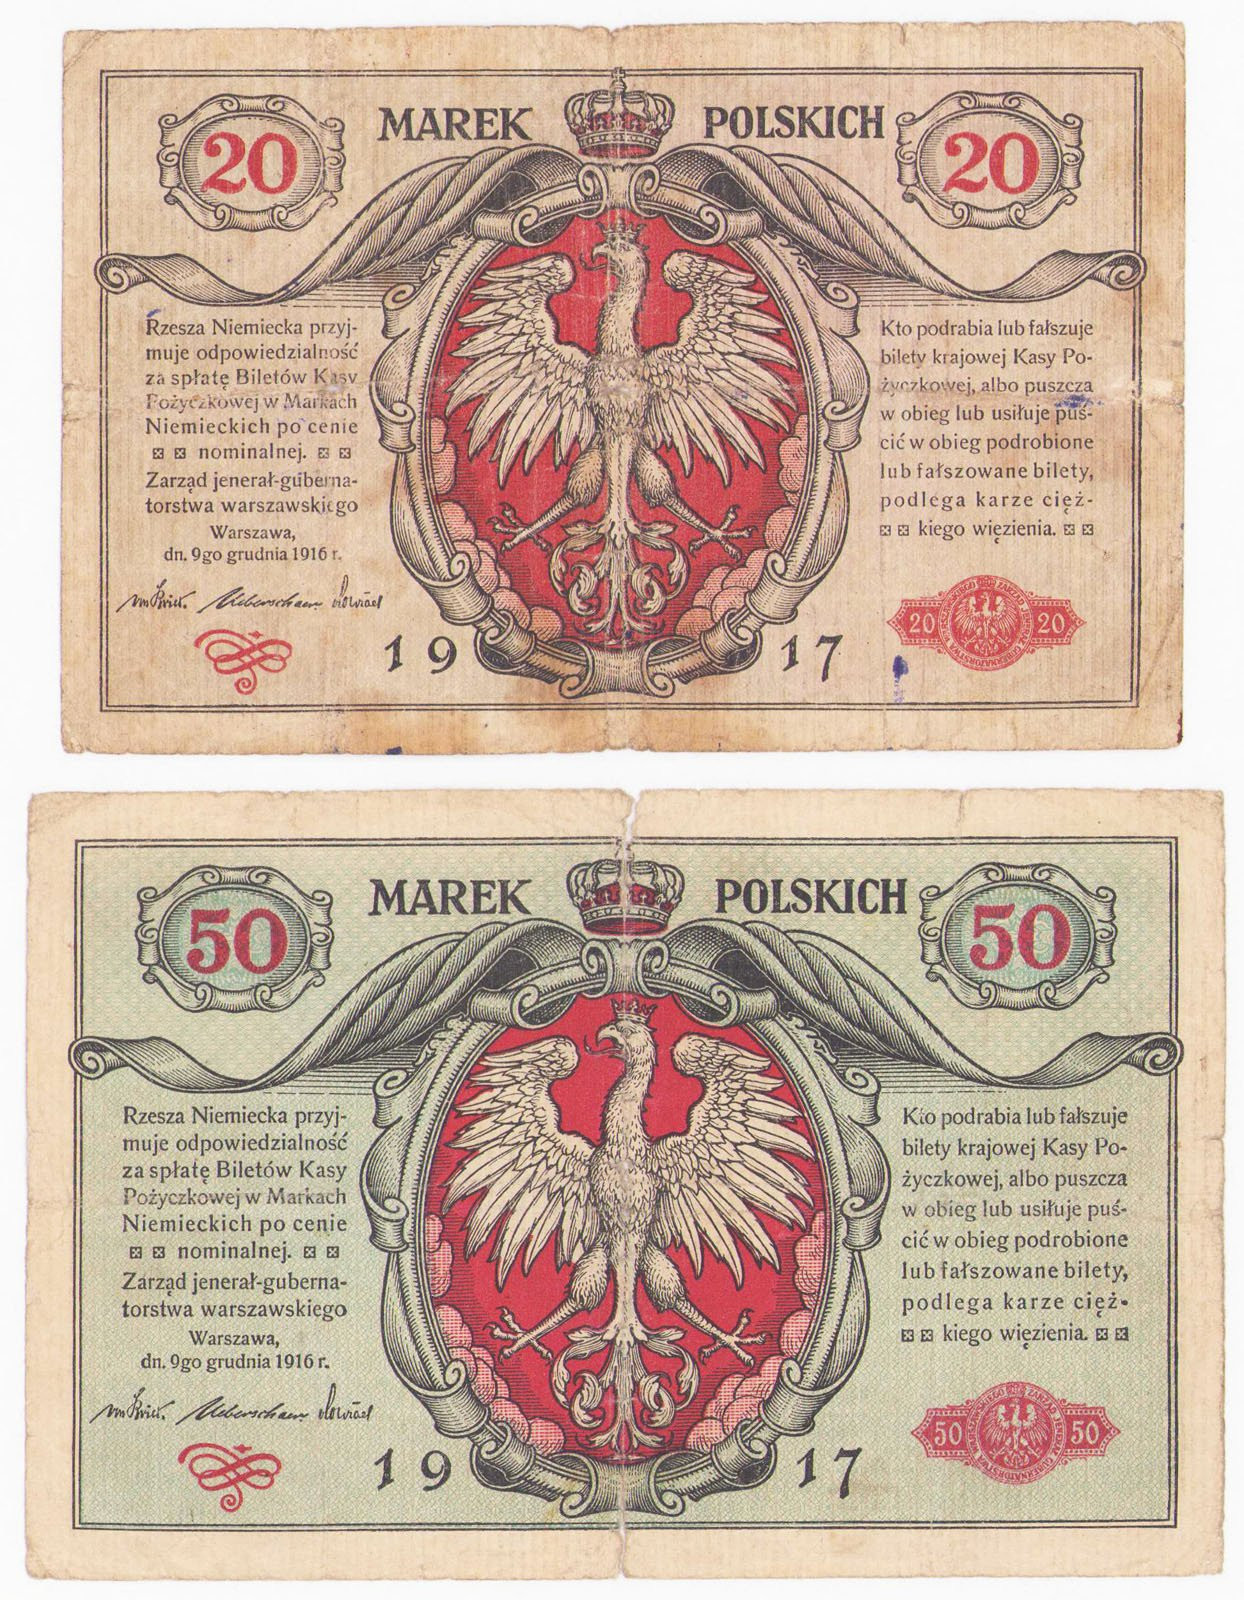 20 marek polskich, jenerał i 50 marek polskich 1916, jenerał seria A